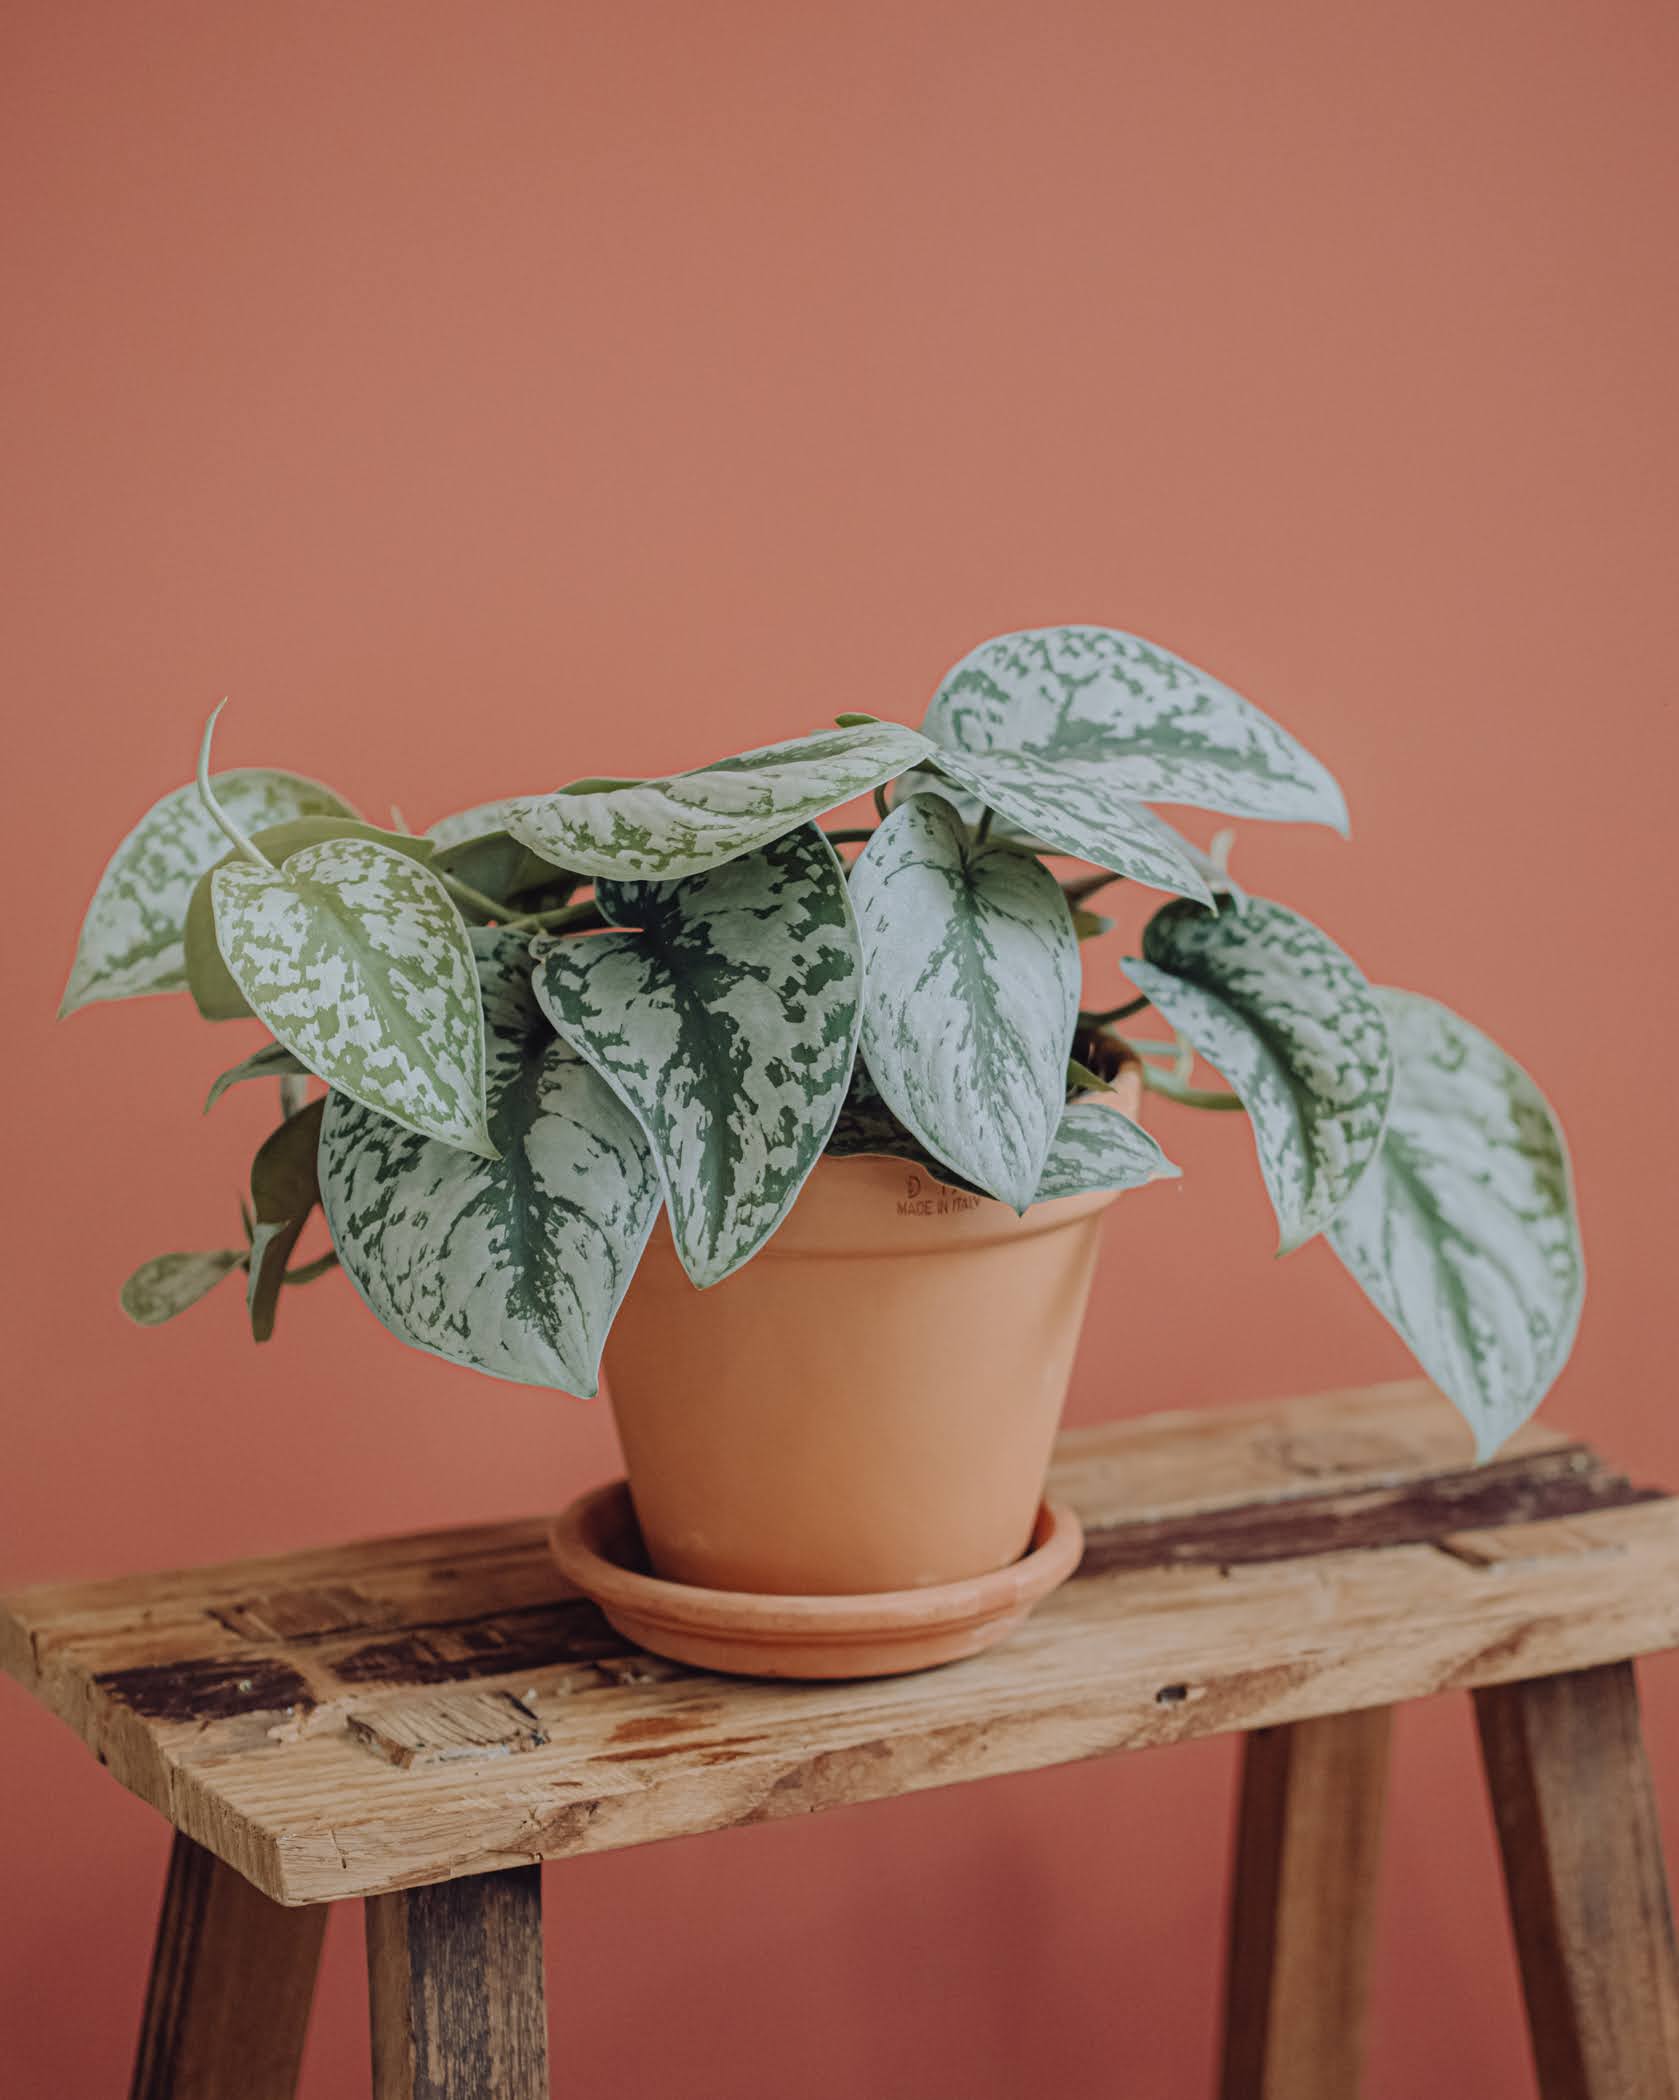 Mini plante : achat en ligne et livraison - INTERFLORA